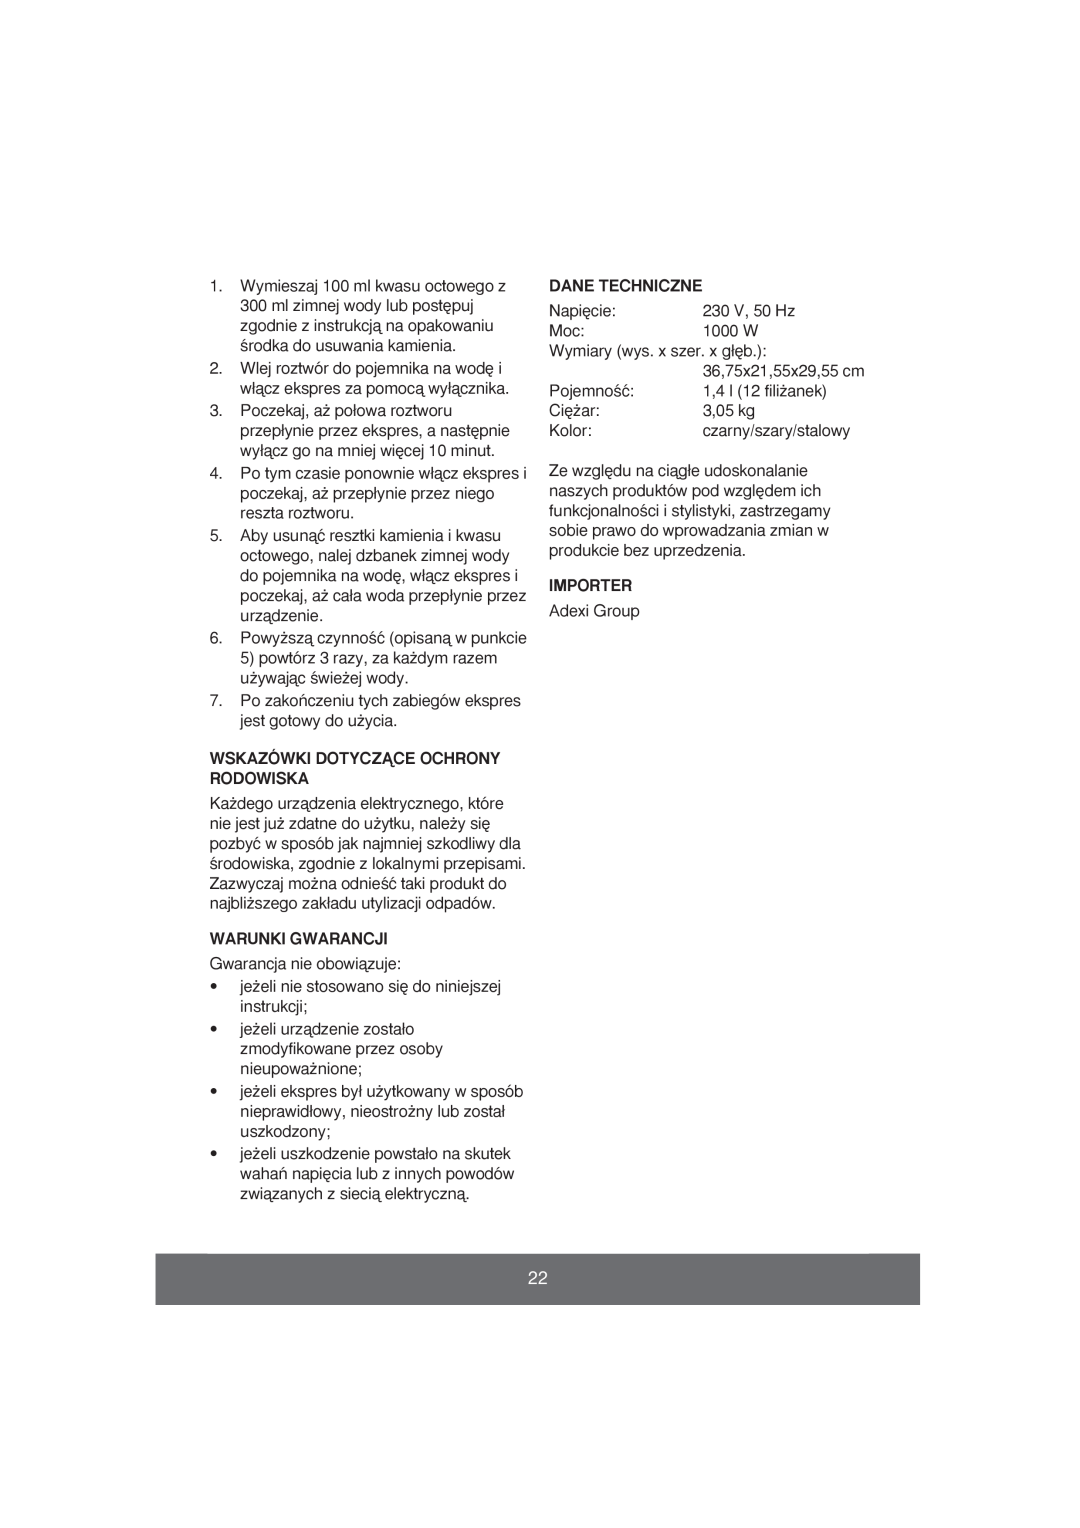 Butler 645-061 manual Wskazówki Dotyczñce Ochrony Rodowiska, Warunki Gwarancji, Dane Techniczne, Importer 